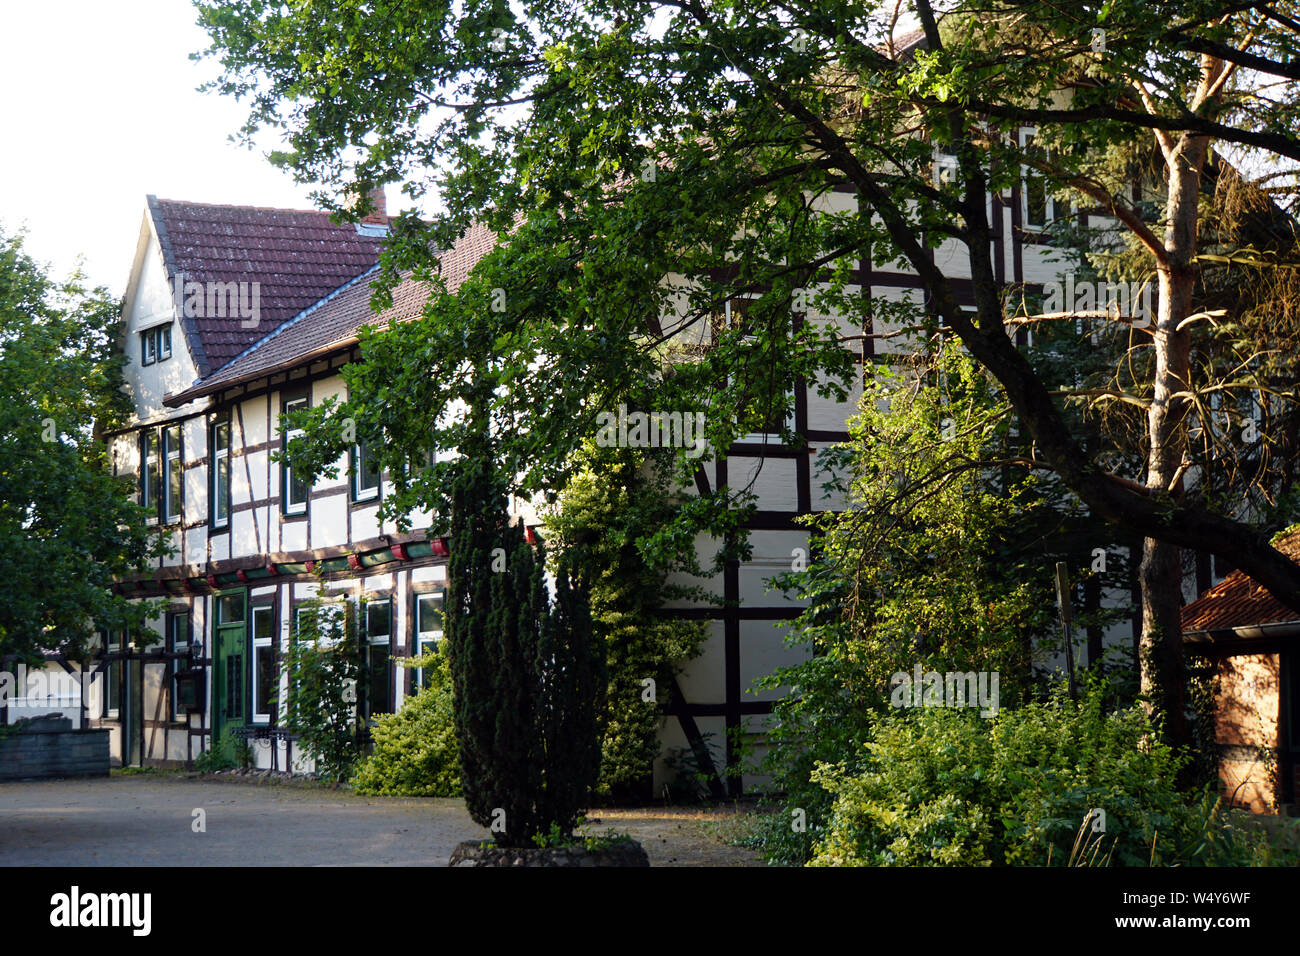 Historisches Fachwerkhaus altes Wegehaus, Meinersen, Niedersachsen, Deutschland Foto de stock